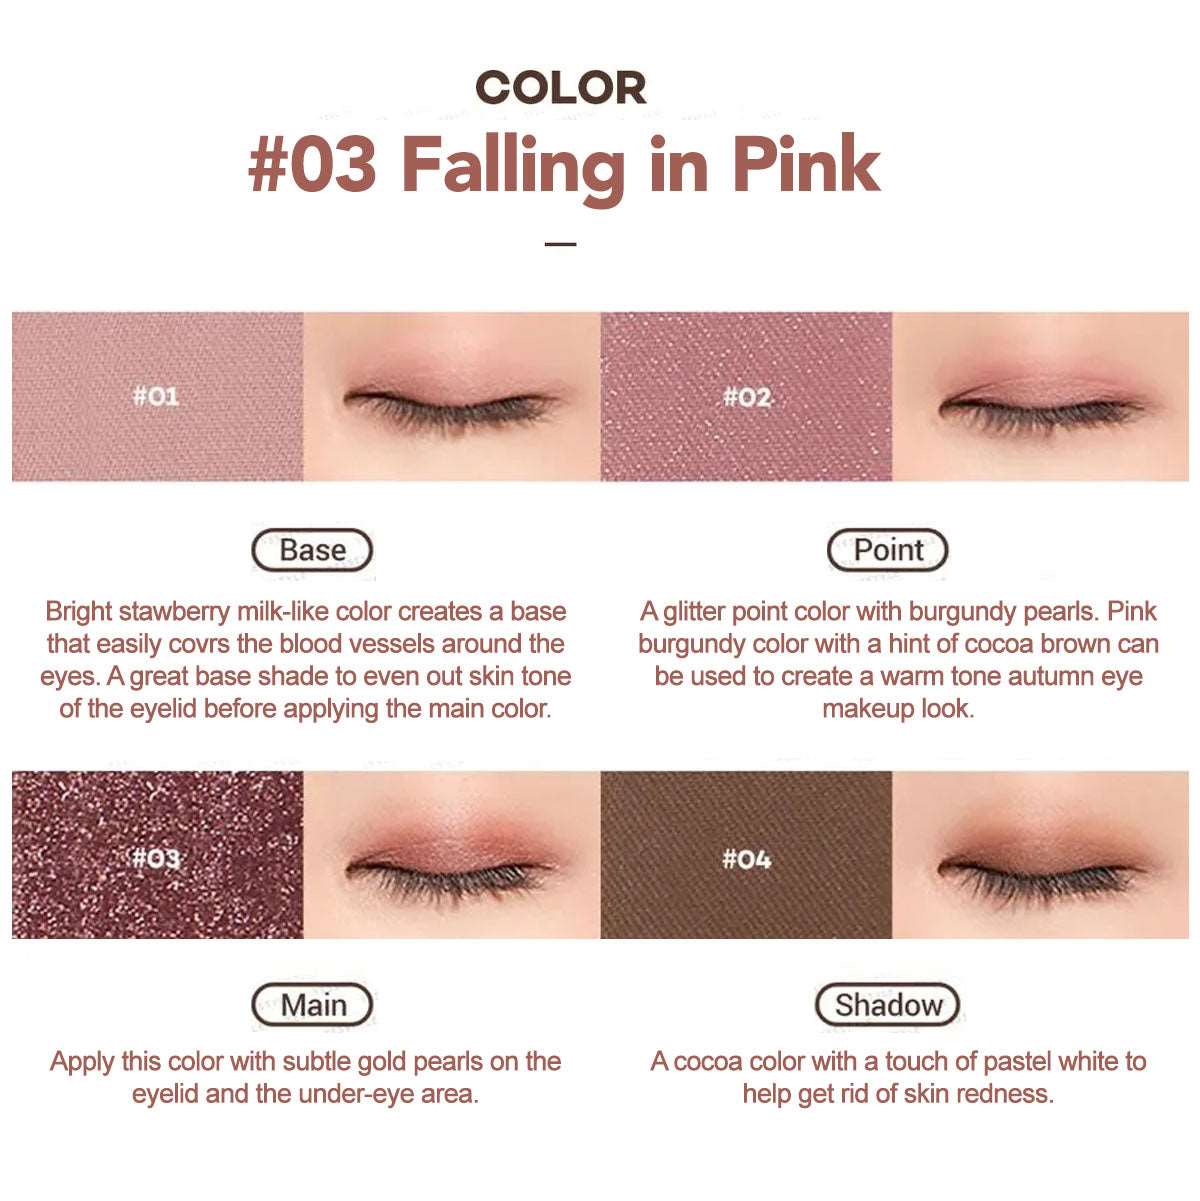 Peach C - Falling in Eyeshadow Palette - 3 Colors